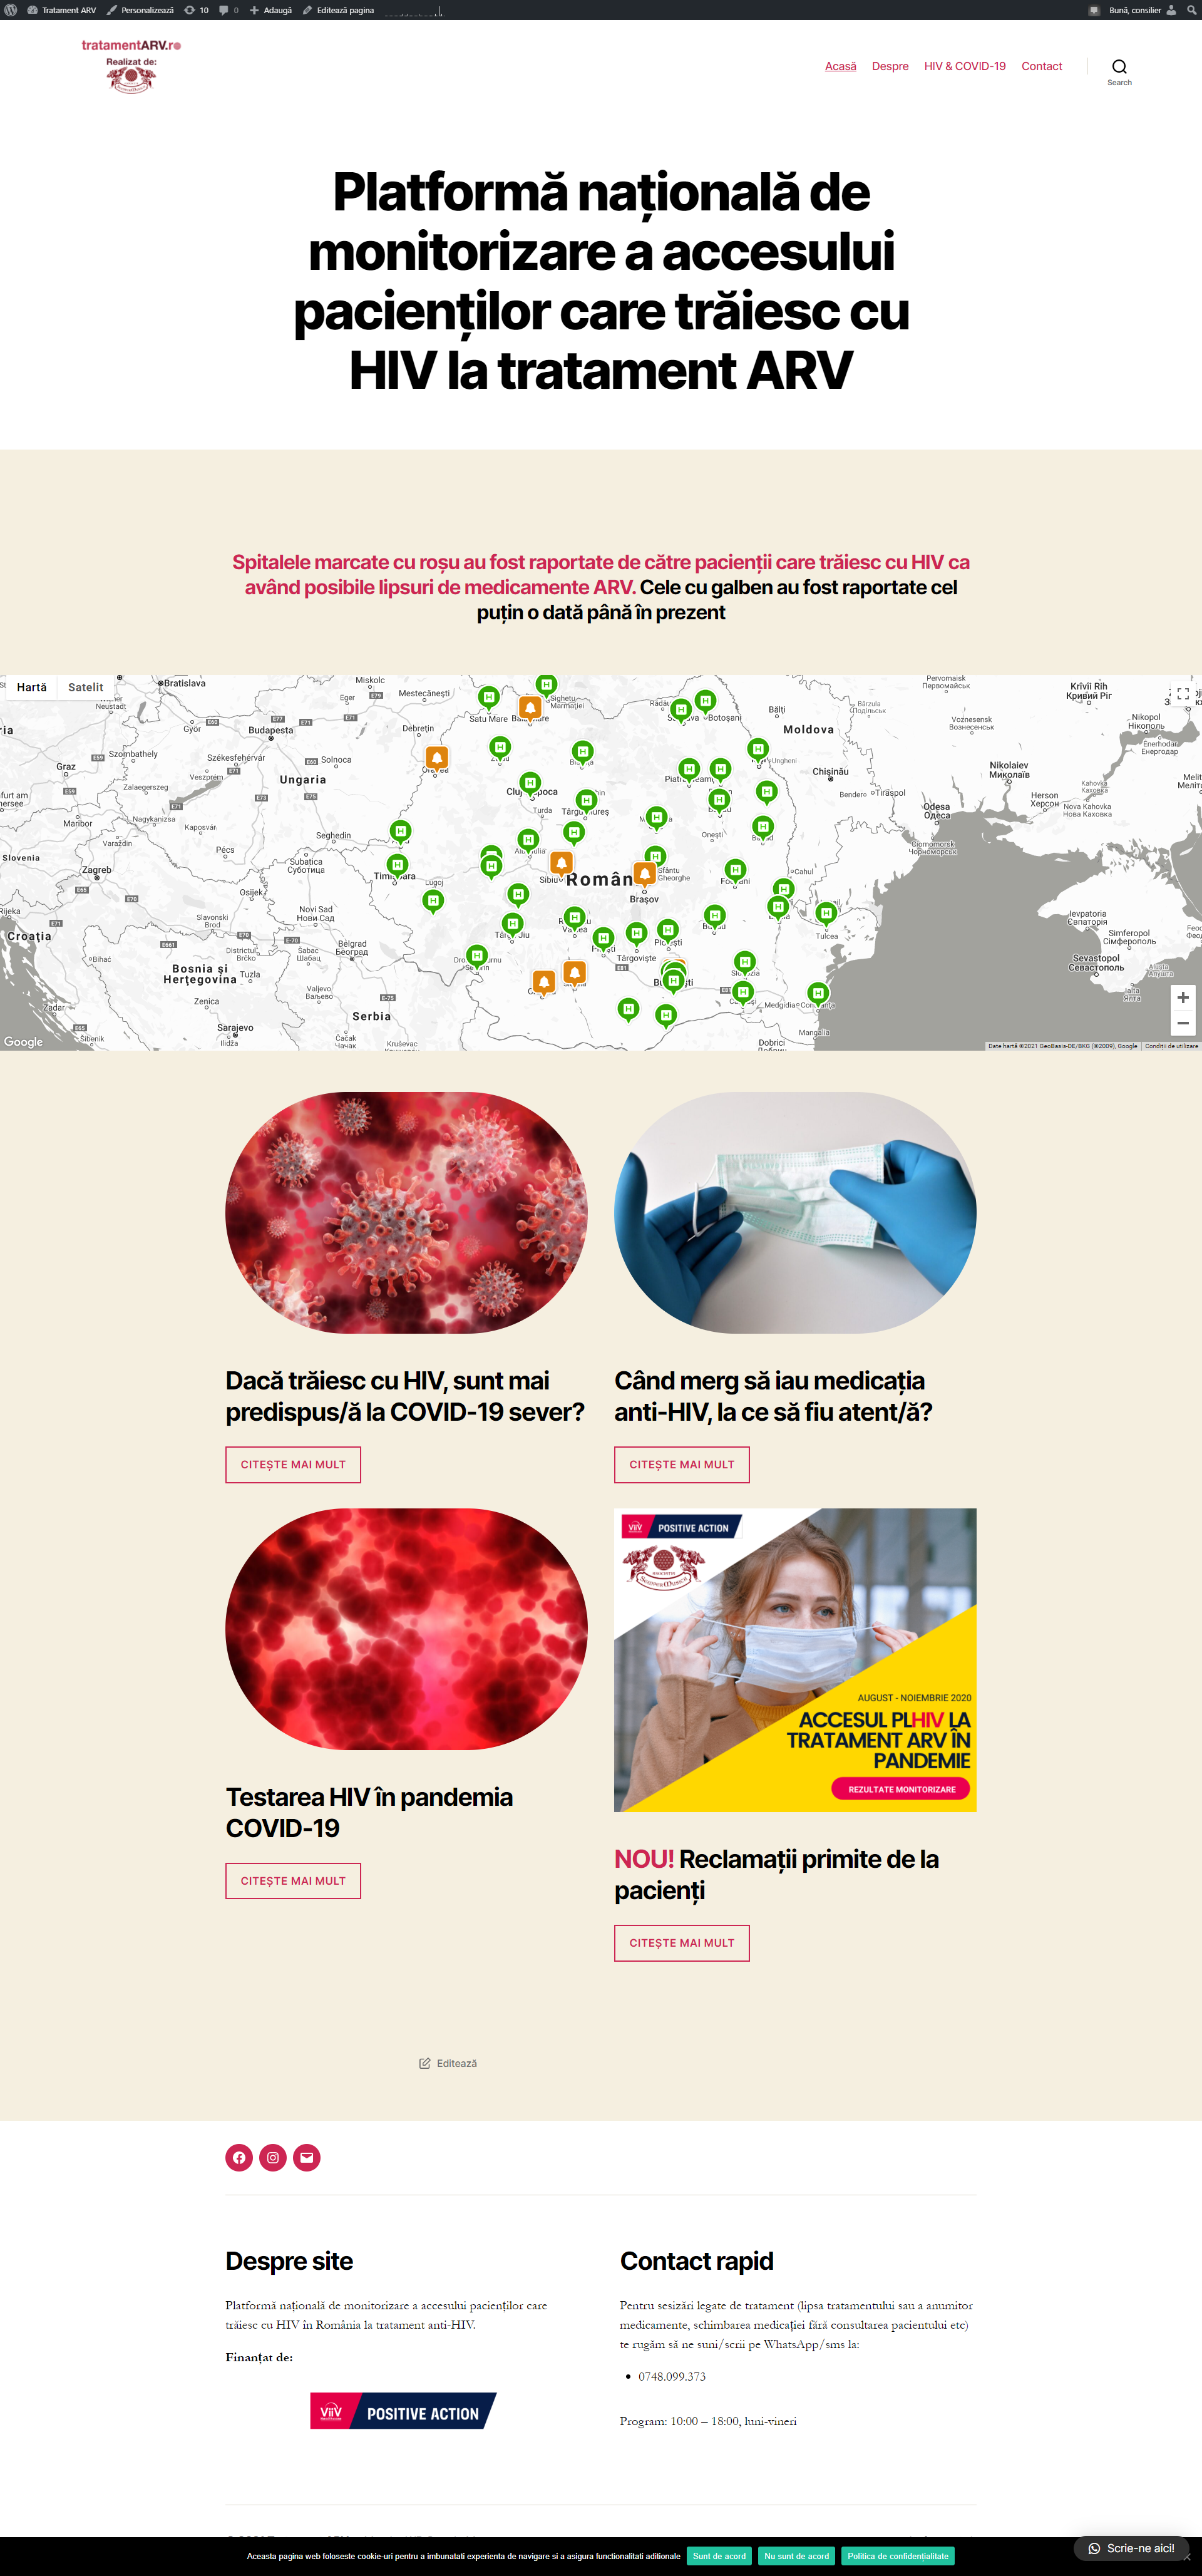 www.tratamentARV.ro - primul site din Romania de raportare a lipsei din spitale a tratamentului anti-HIV